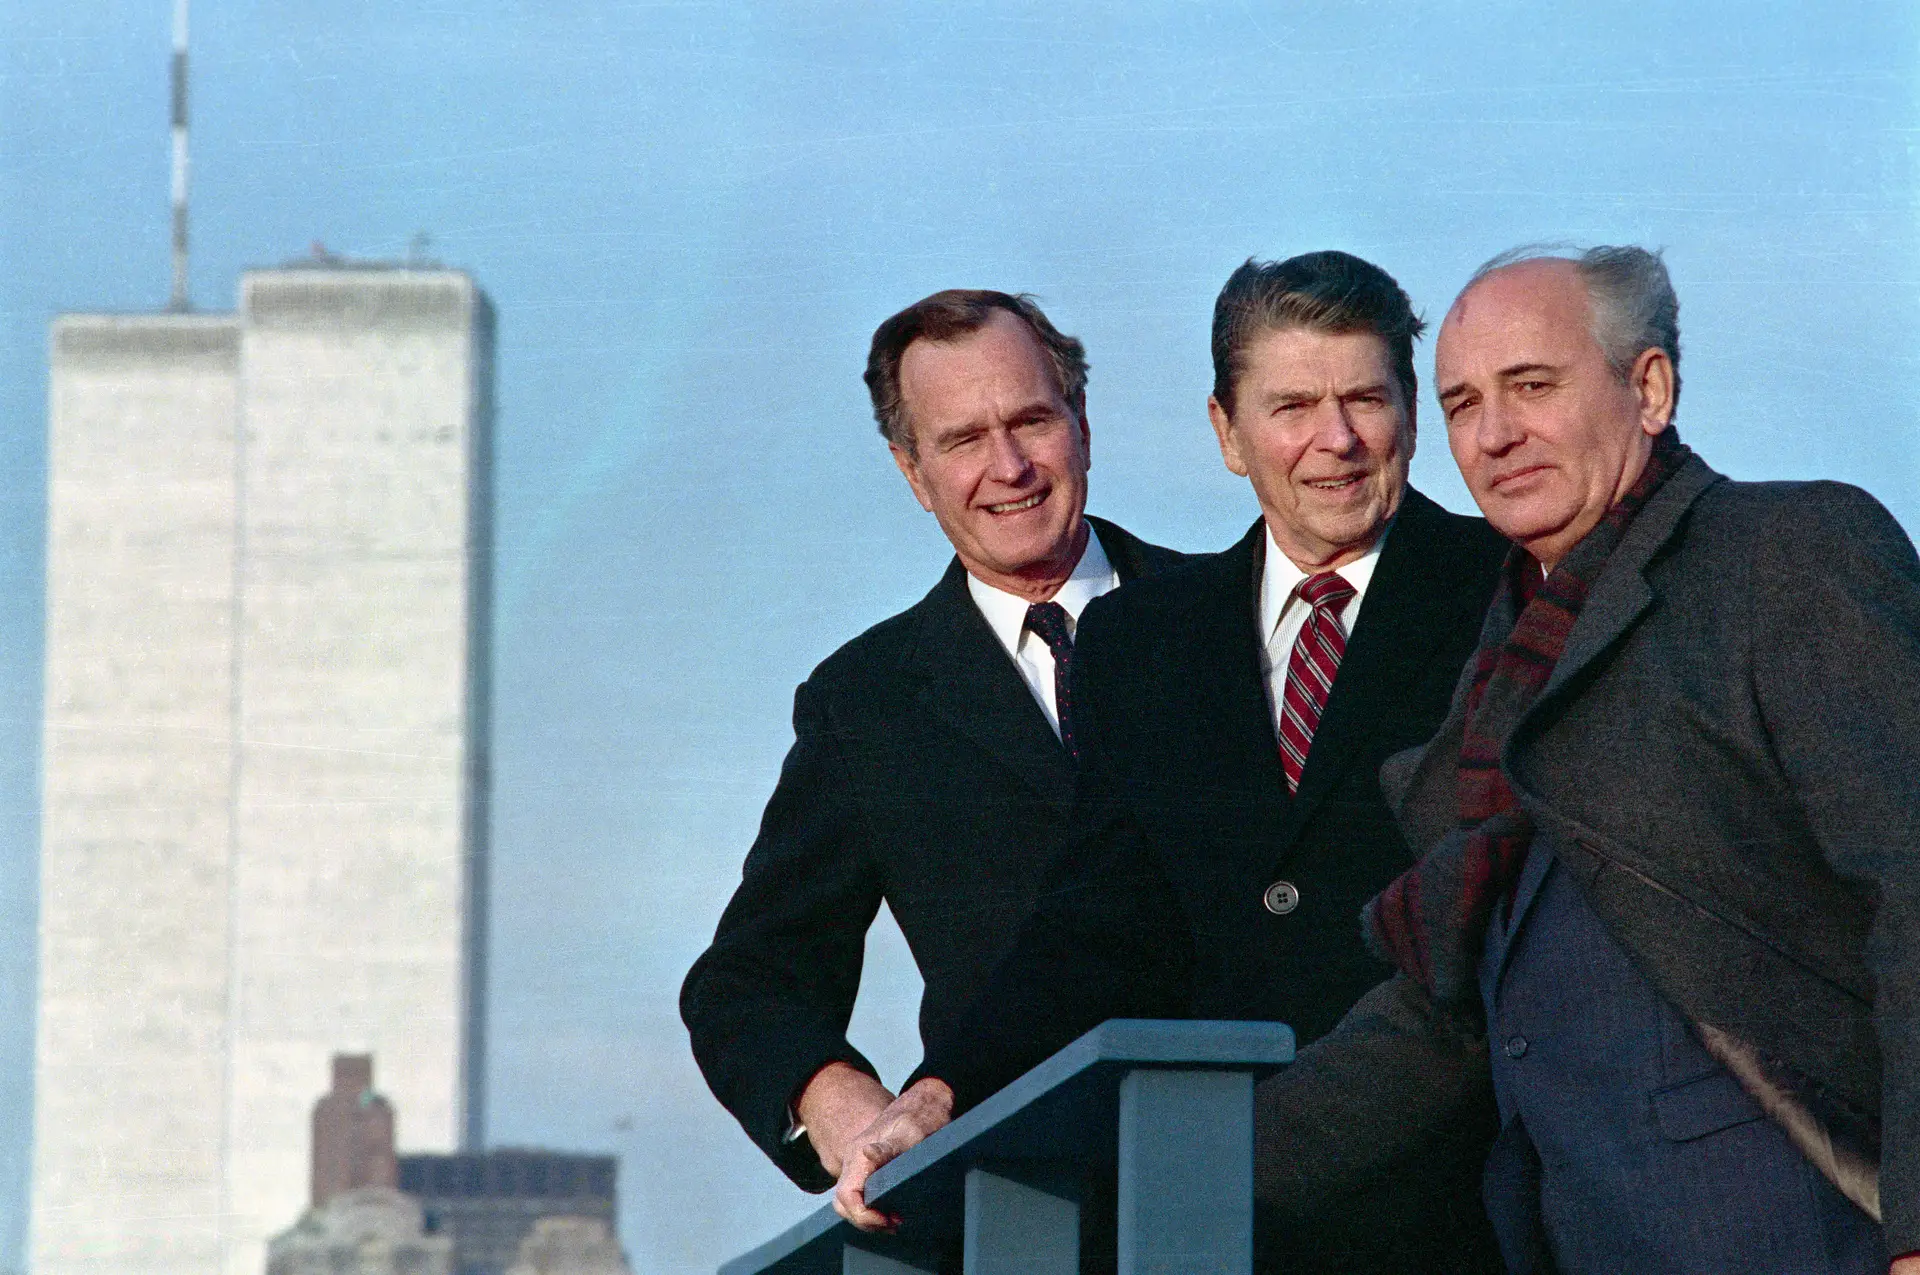 ‘REALPOLITIK’. Um encontro improvável anos antes, com o Presidente dos EUA, Ronald Reagan, e George Bush, que lhe sucederia. Foi em 1988, em Nova Iorque, com o World Trade Center como cenário